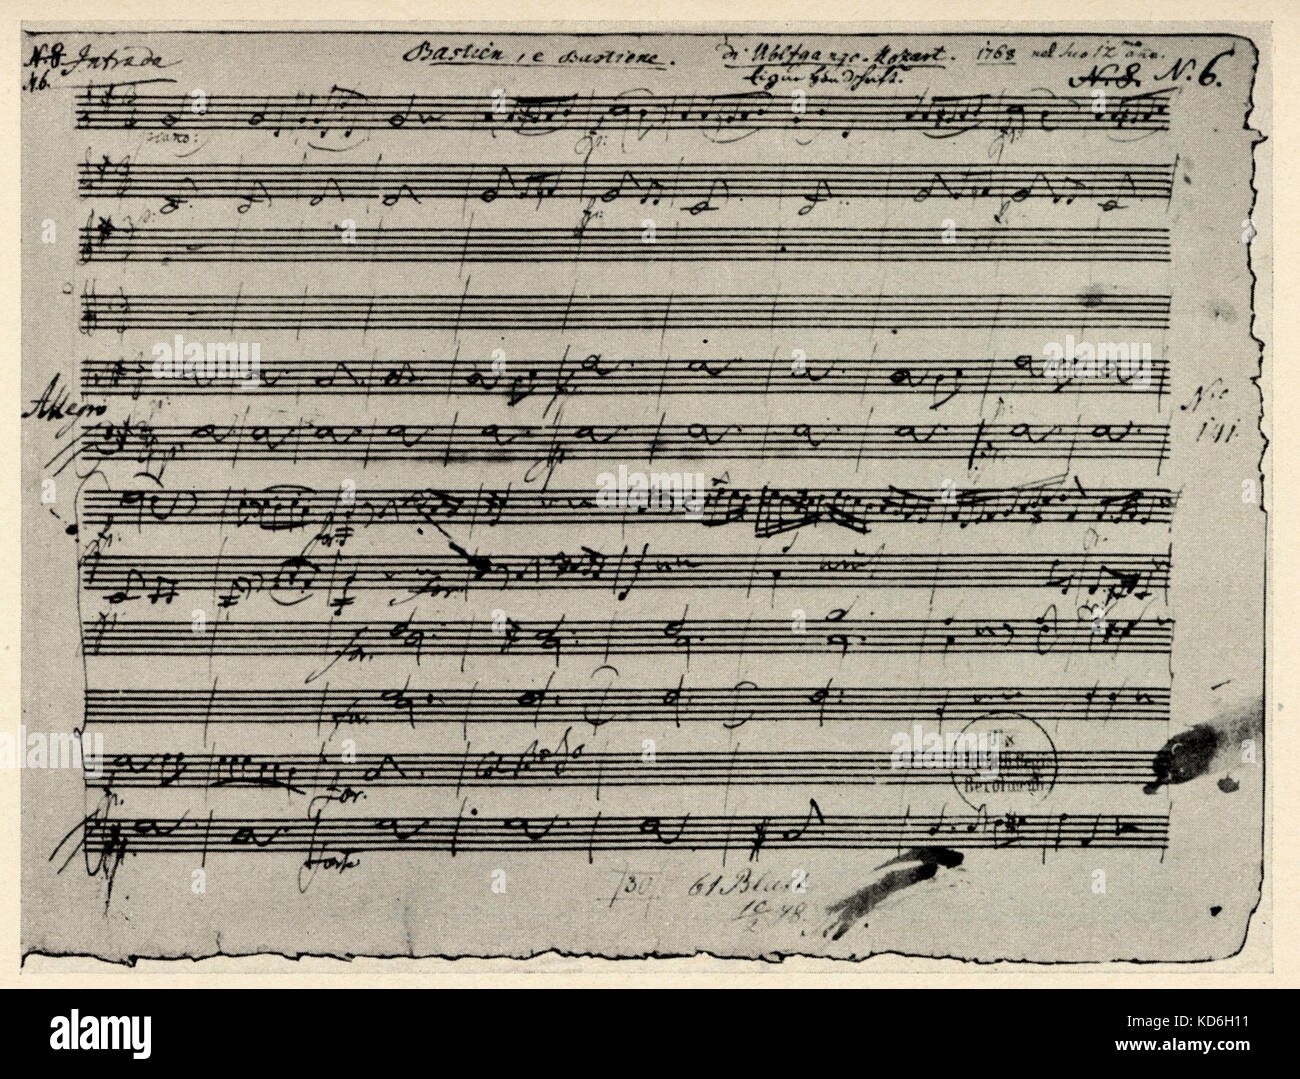 Manuscrit de Mozart de Bastien et Bastienne. C'est la première page écrite quand il avait 12 ans. Wolfgang Amadeus Mozart compositeur autrichien,1756-1791 Banque D'Images